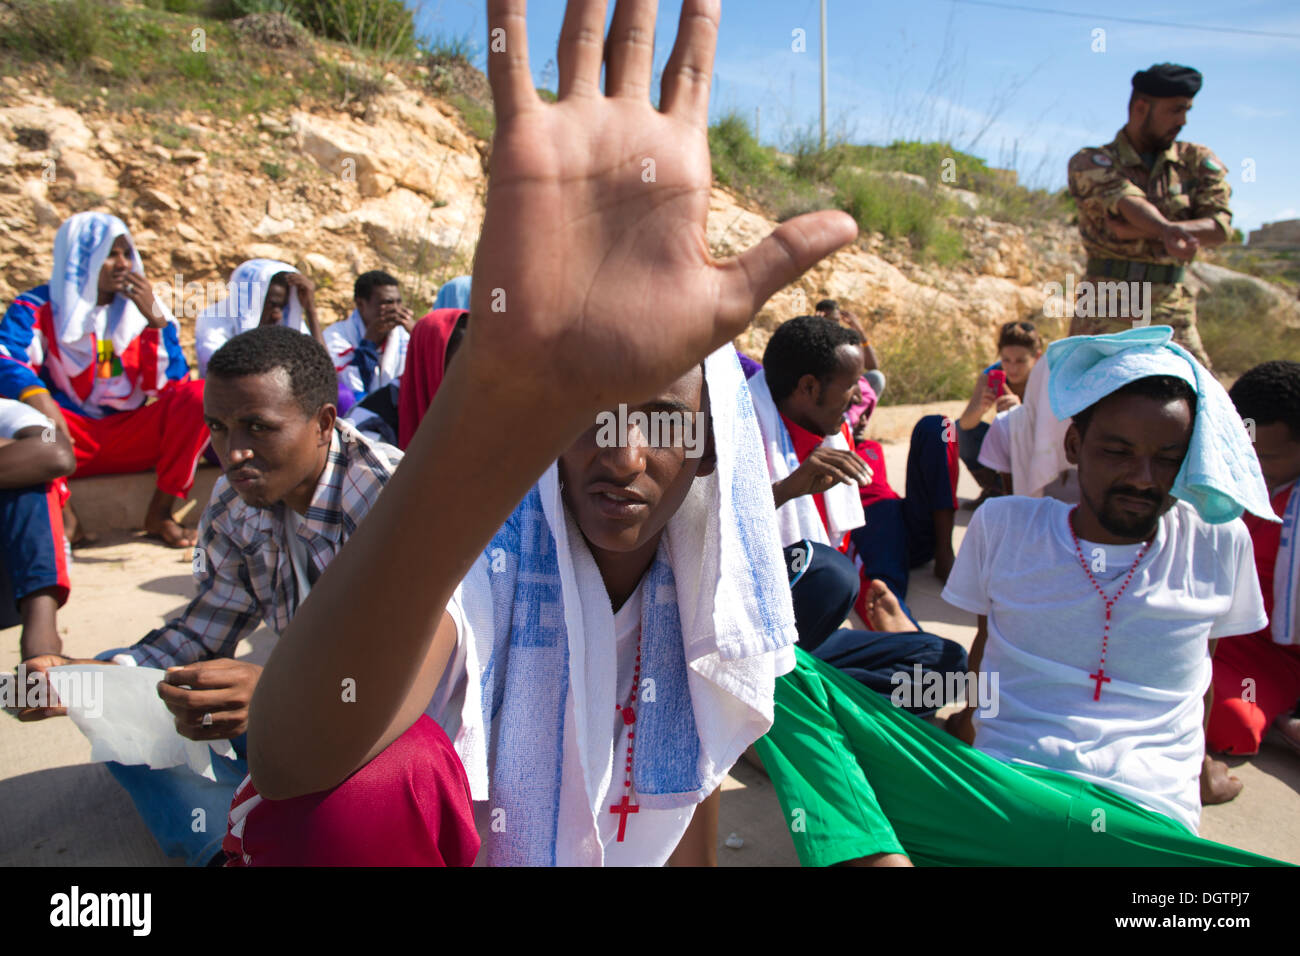 Les migrants érythréens sauvé de la mer près de Lampedusa, l'Italie se rassemblent pour la prière pour perdu des proches au cours d'une protestation silencieuse. Banque D'Images